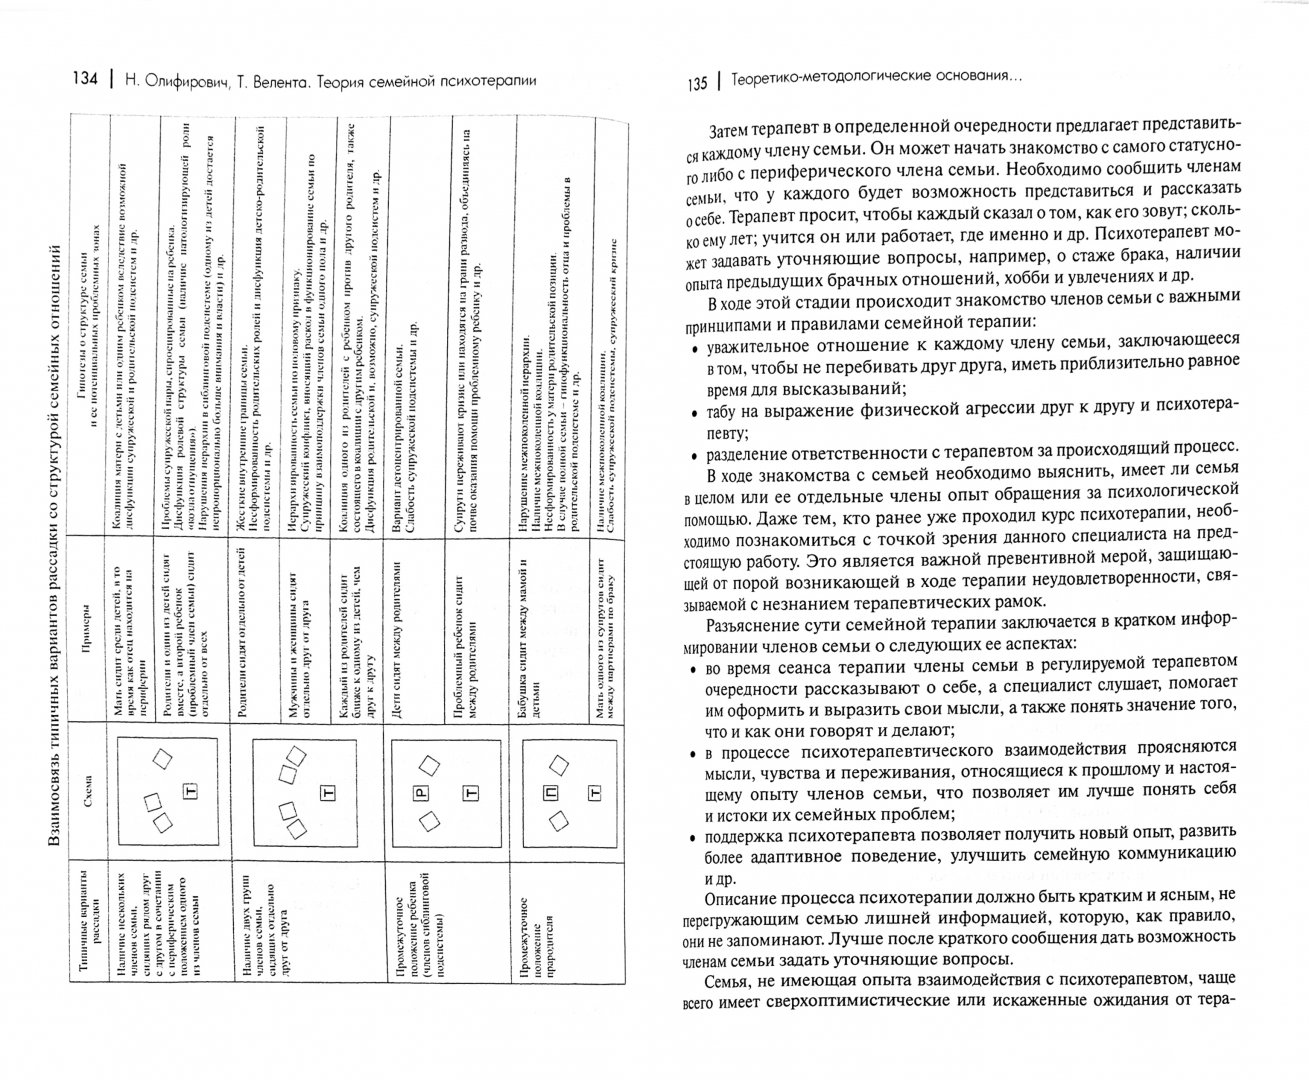 Иллюстрация 1 из 11 для Теория семейной психотерапии. Системно-аналитический подход - Олифирович, Велента | Лабиринт - книги. Источник: Лабиринт